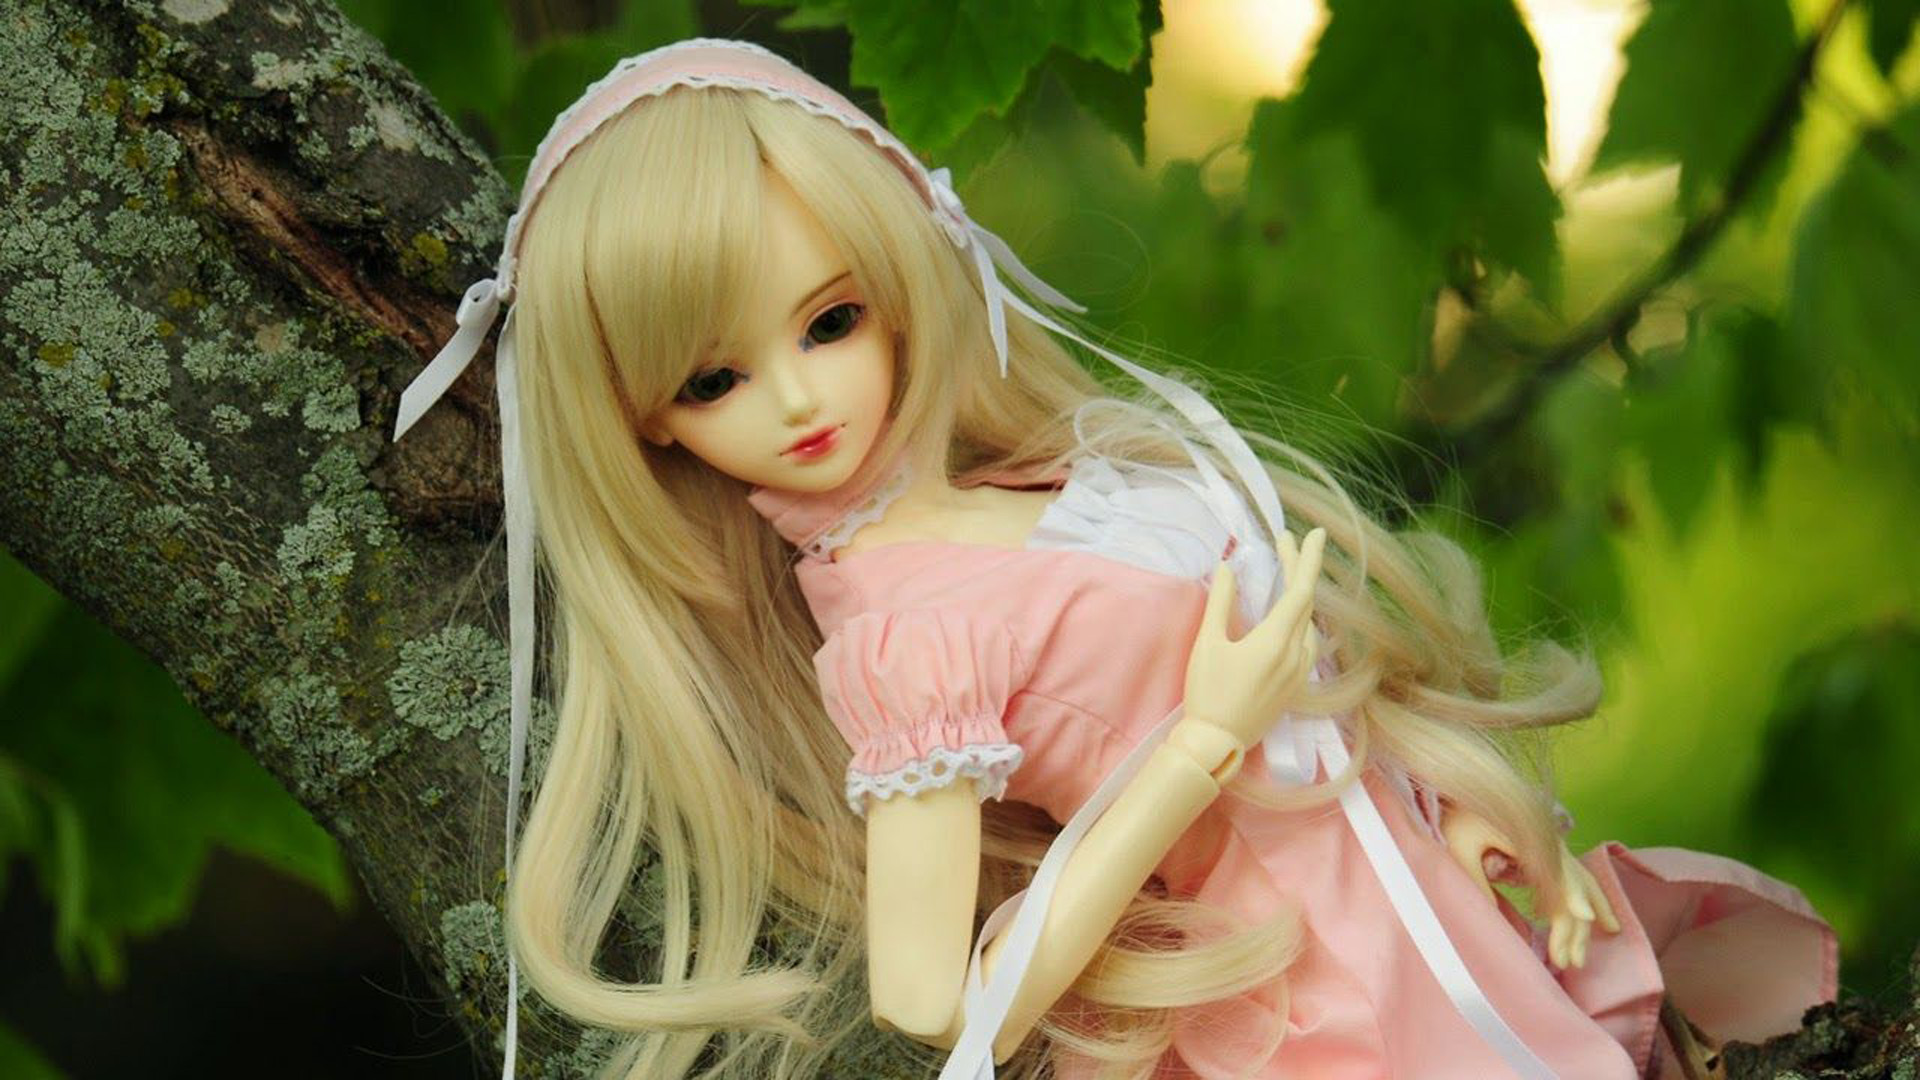 Cute Barbie Doll On Tree Branch In Blur Green Leaves Wallpaper 2K Barbie